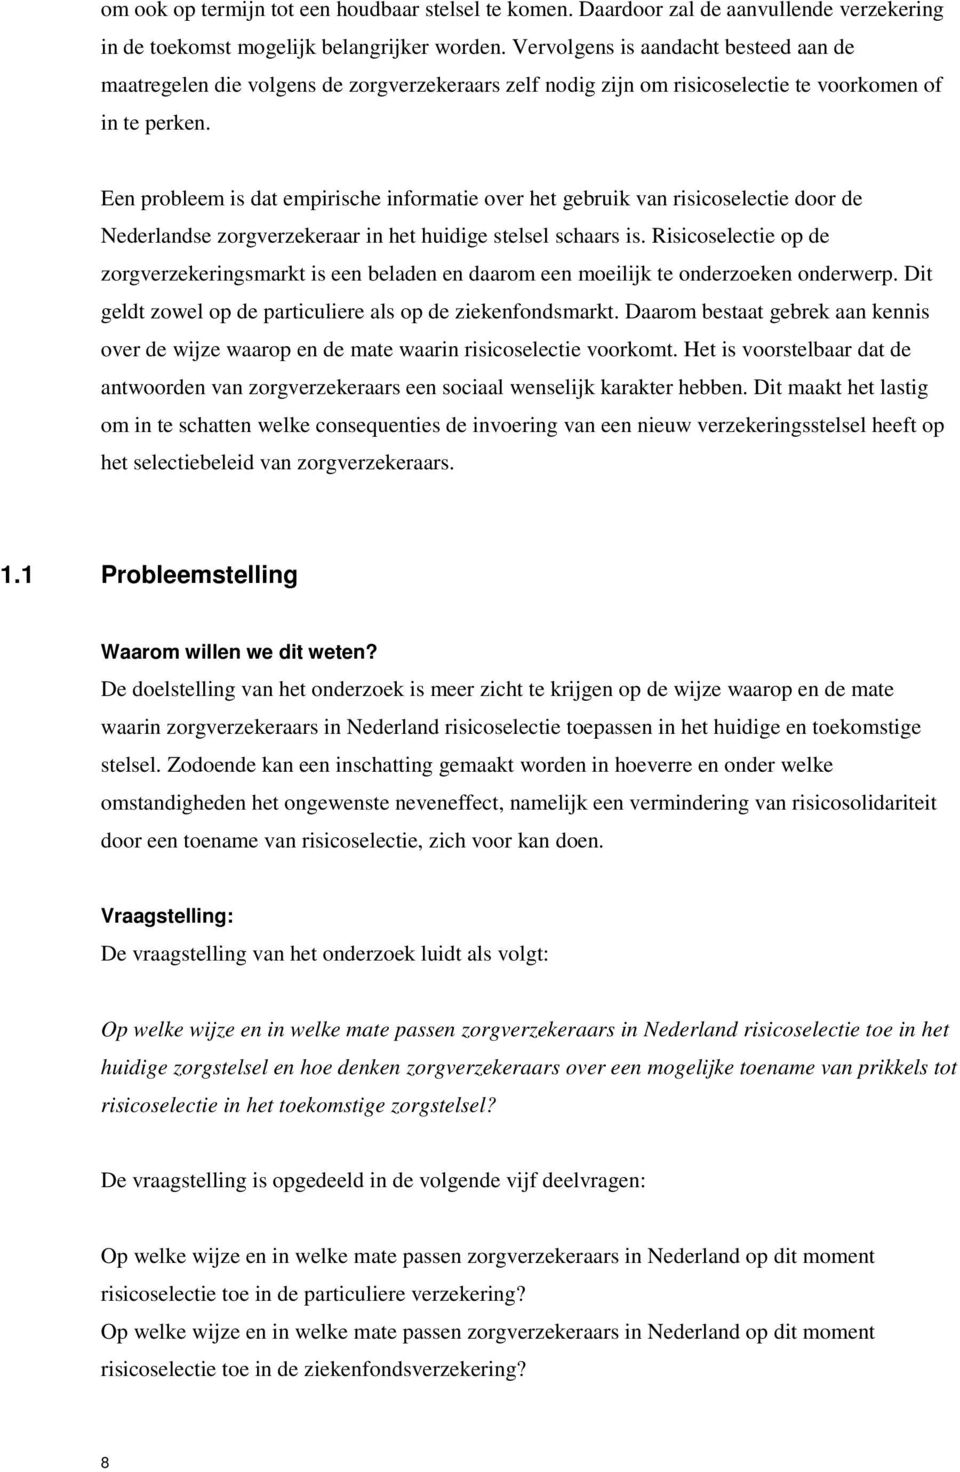 Een probleem is dat empirische informatie over het gebruik van risicoselectie door de Nederlandse zorgverzekeraar in het huidige stelsel schaars is.